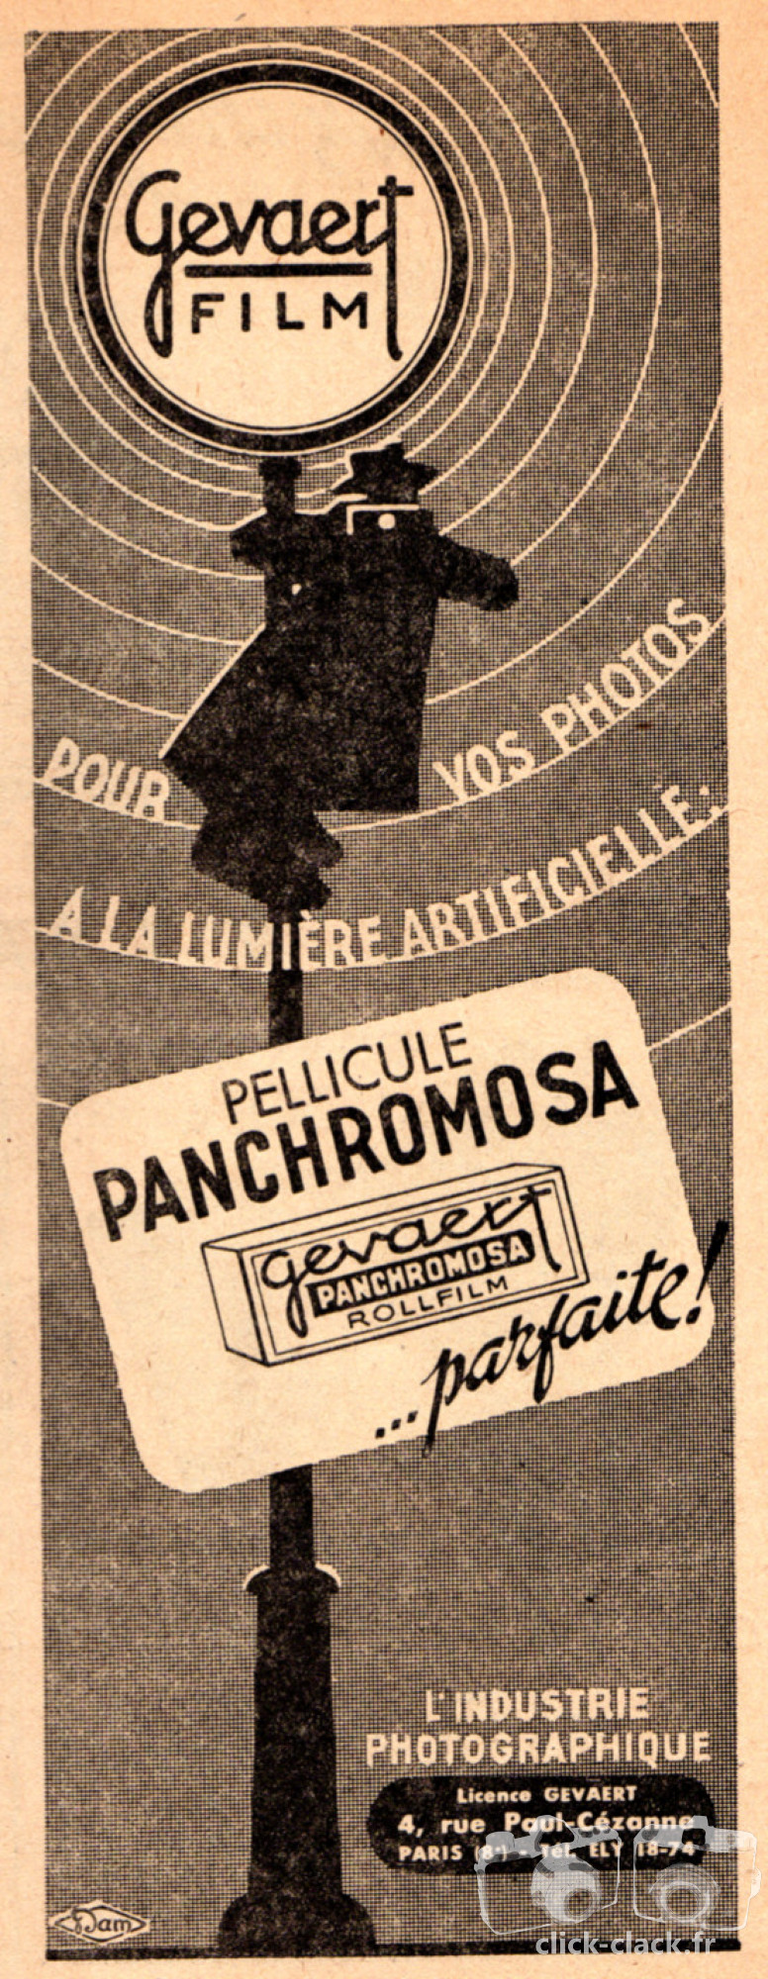 Gevaert - Films Panchrochromosa - décembre 1947 - Photo-Cinéma